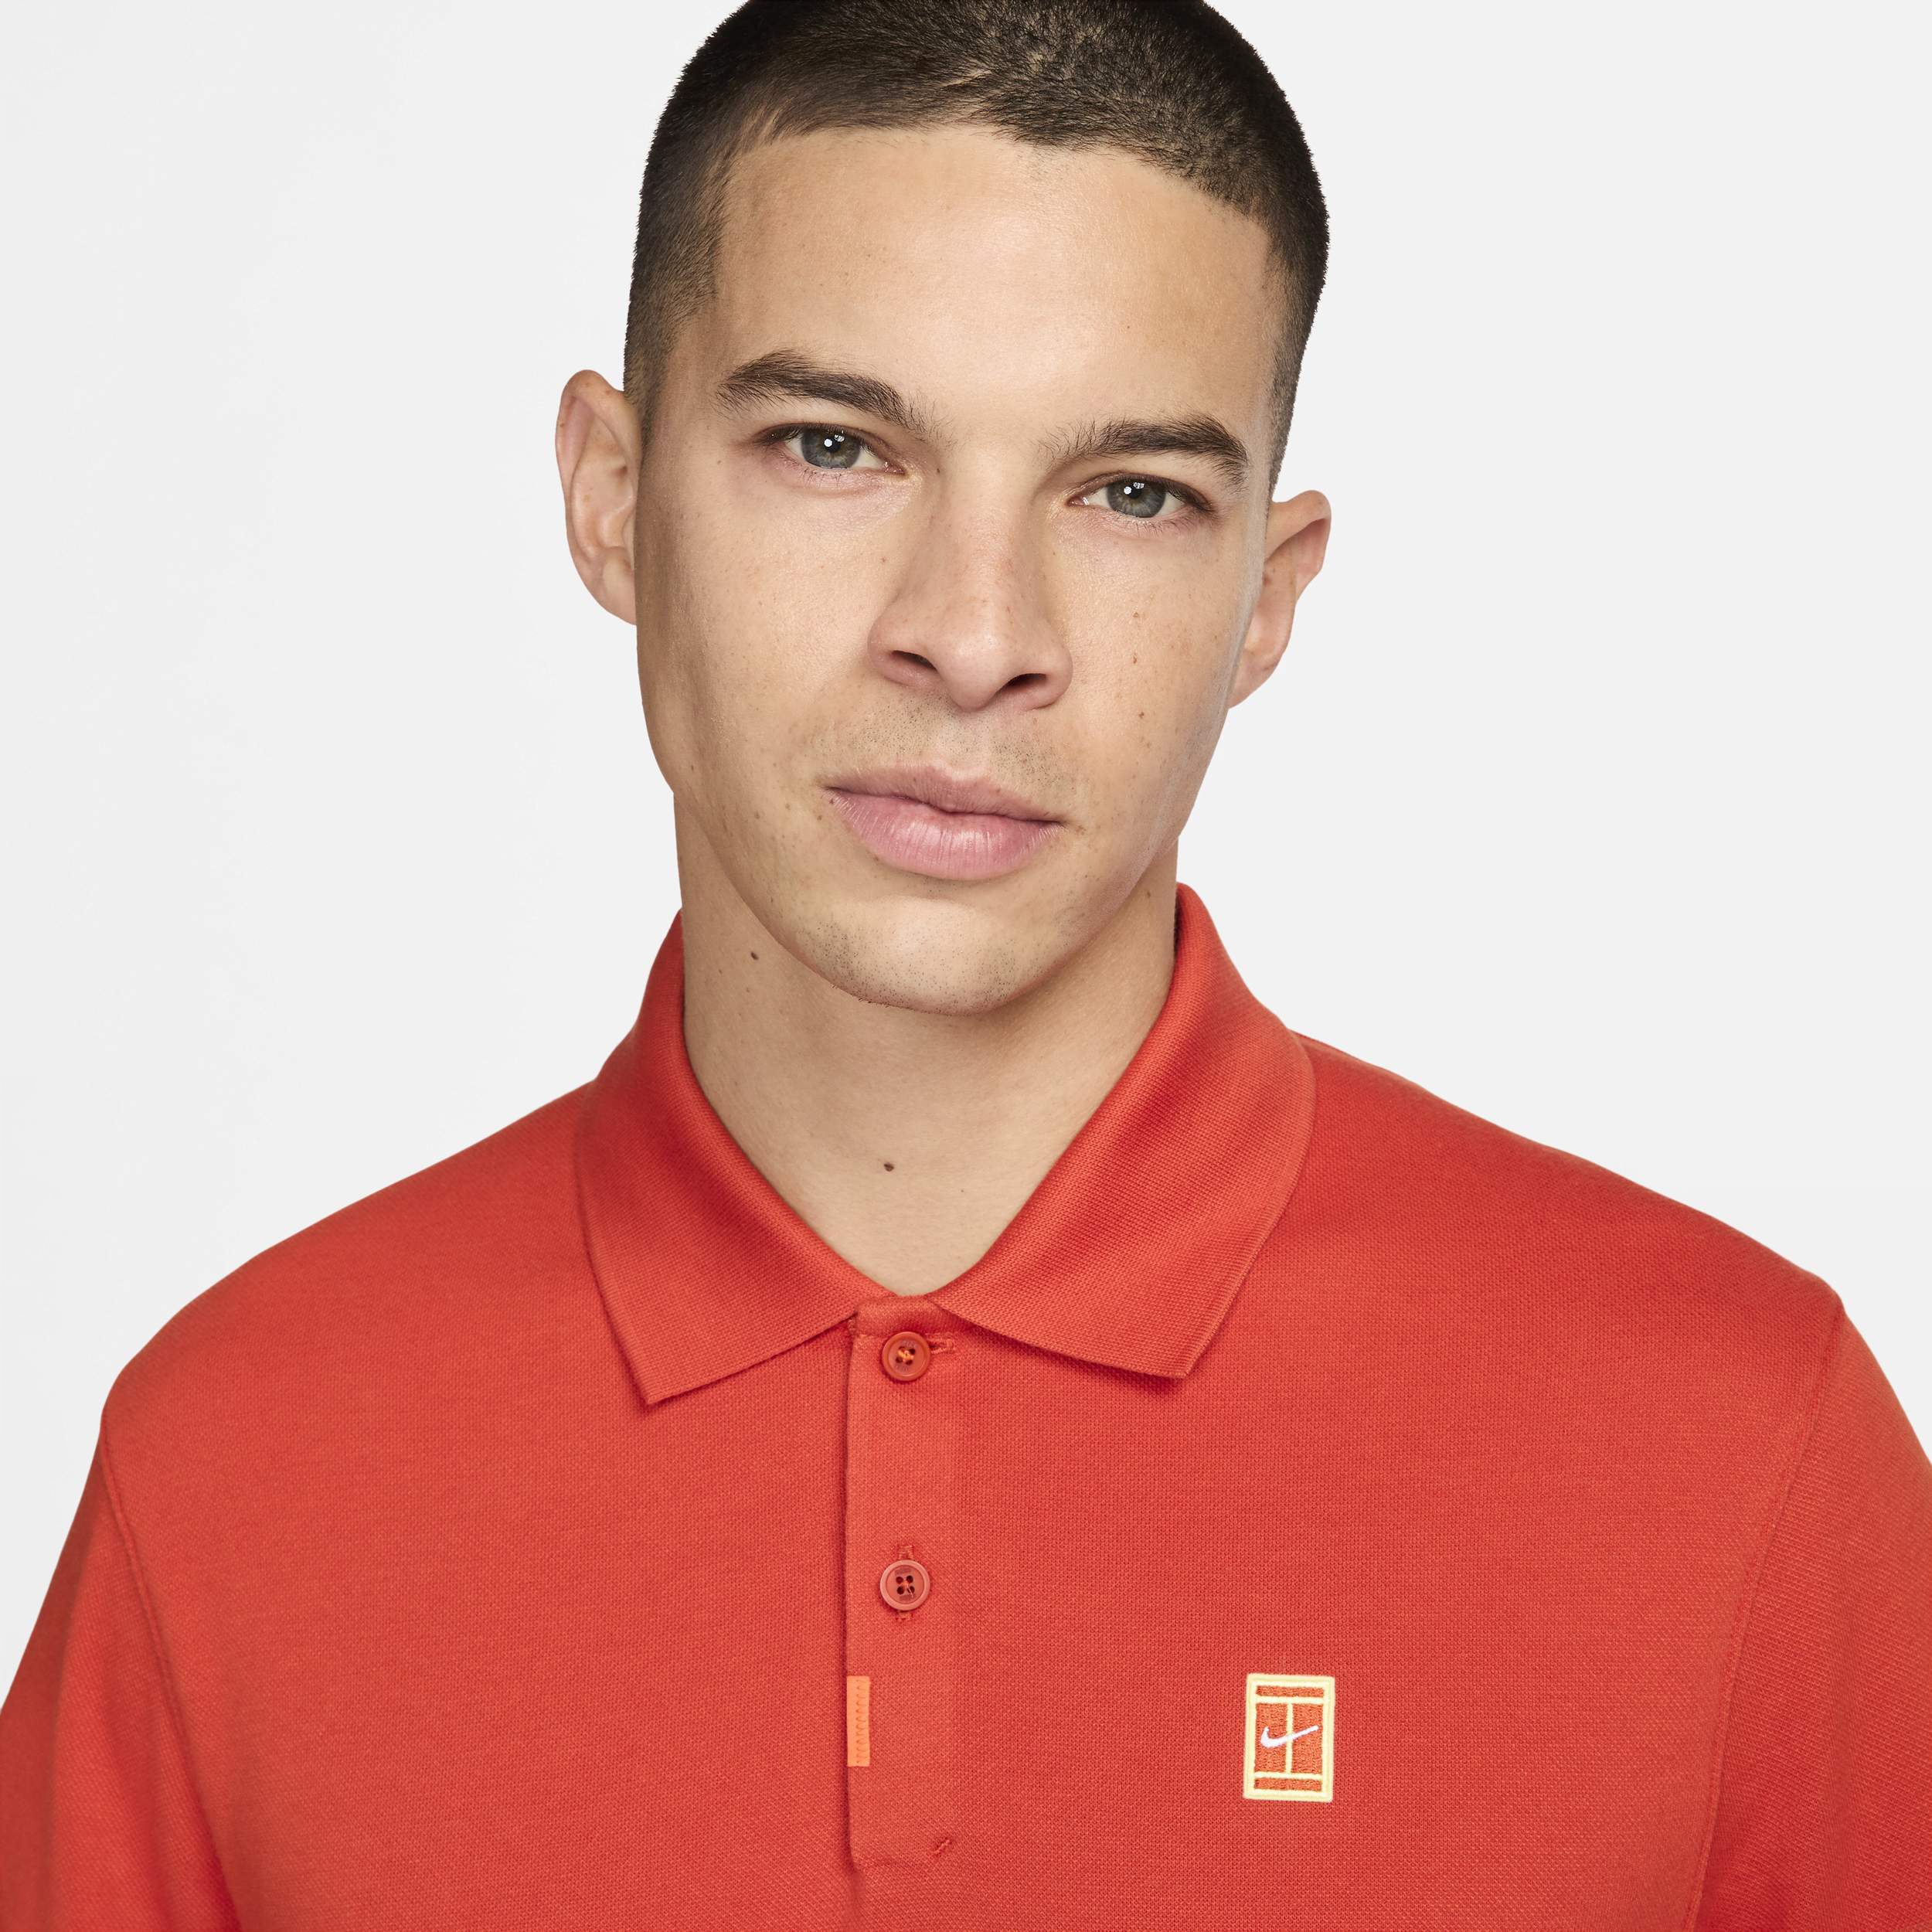 Nike The Polo met aansluitende pasvorm voor heren Oranje